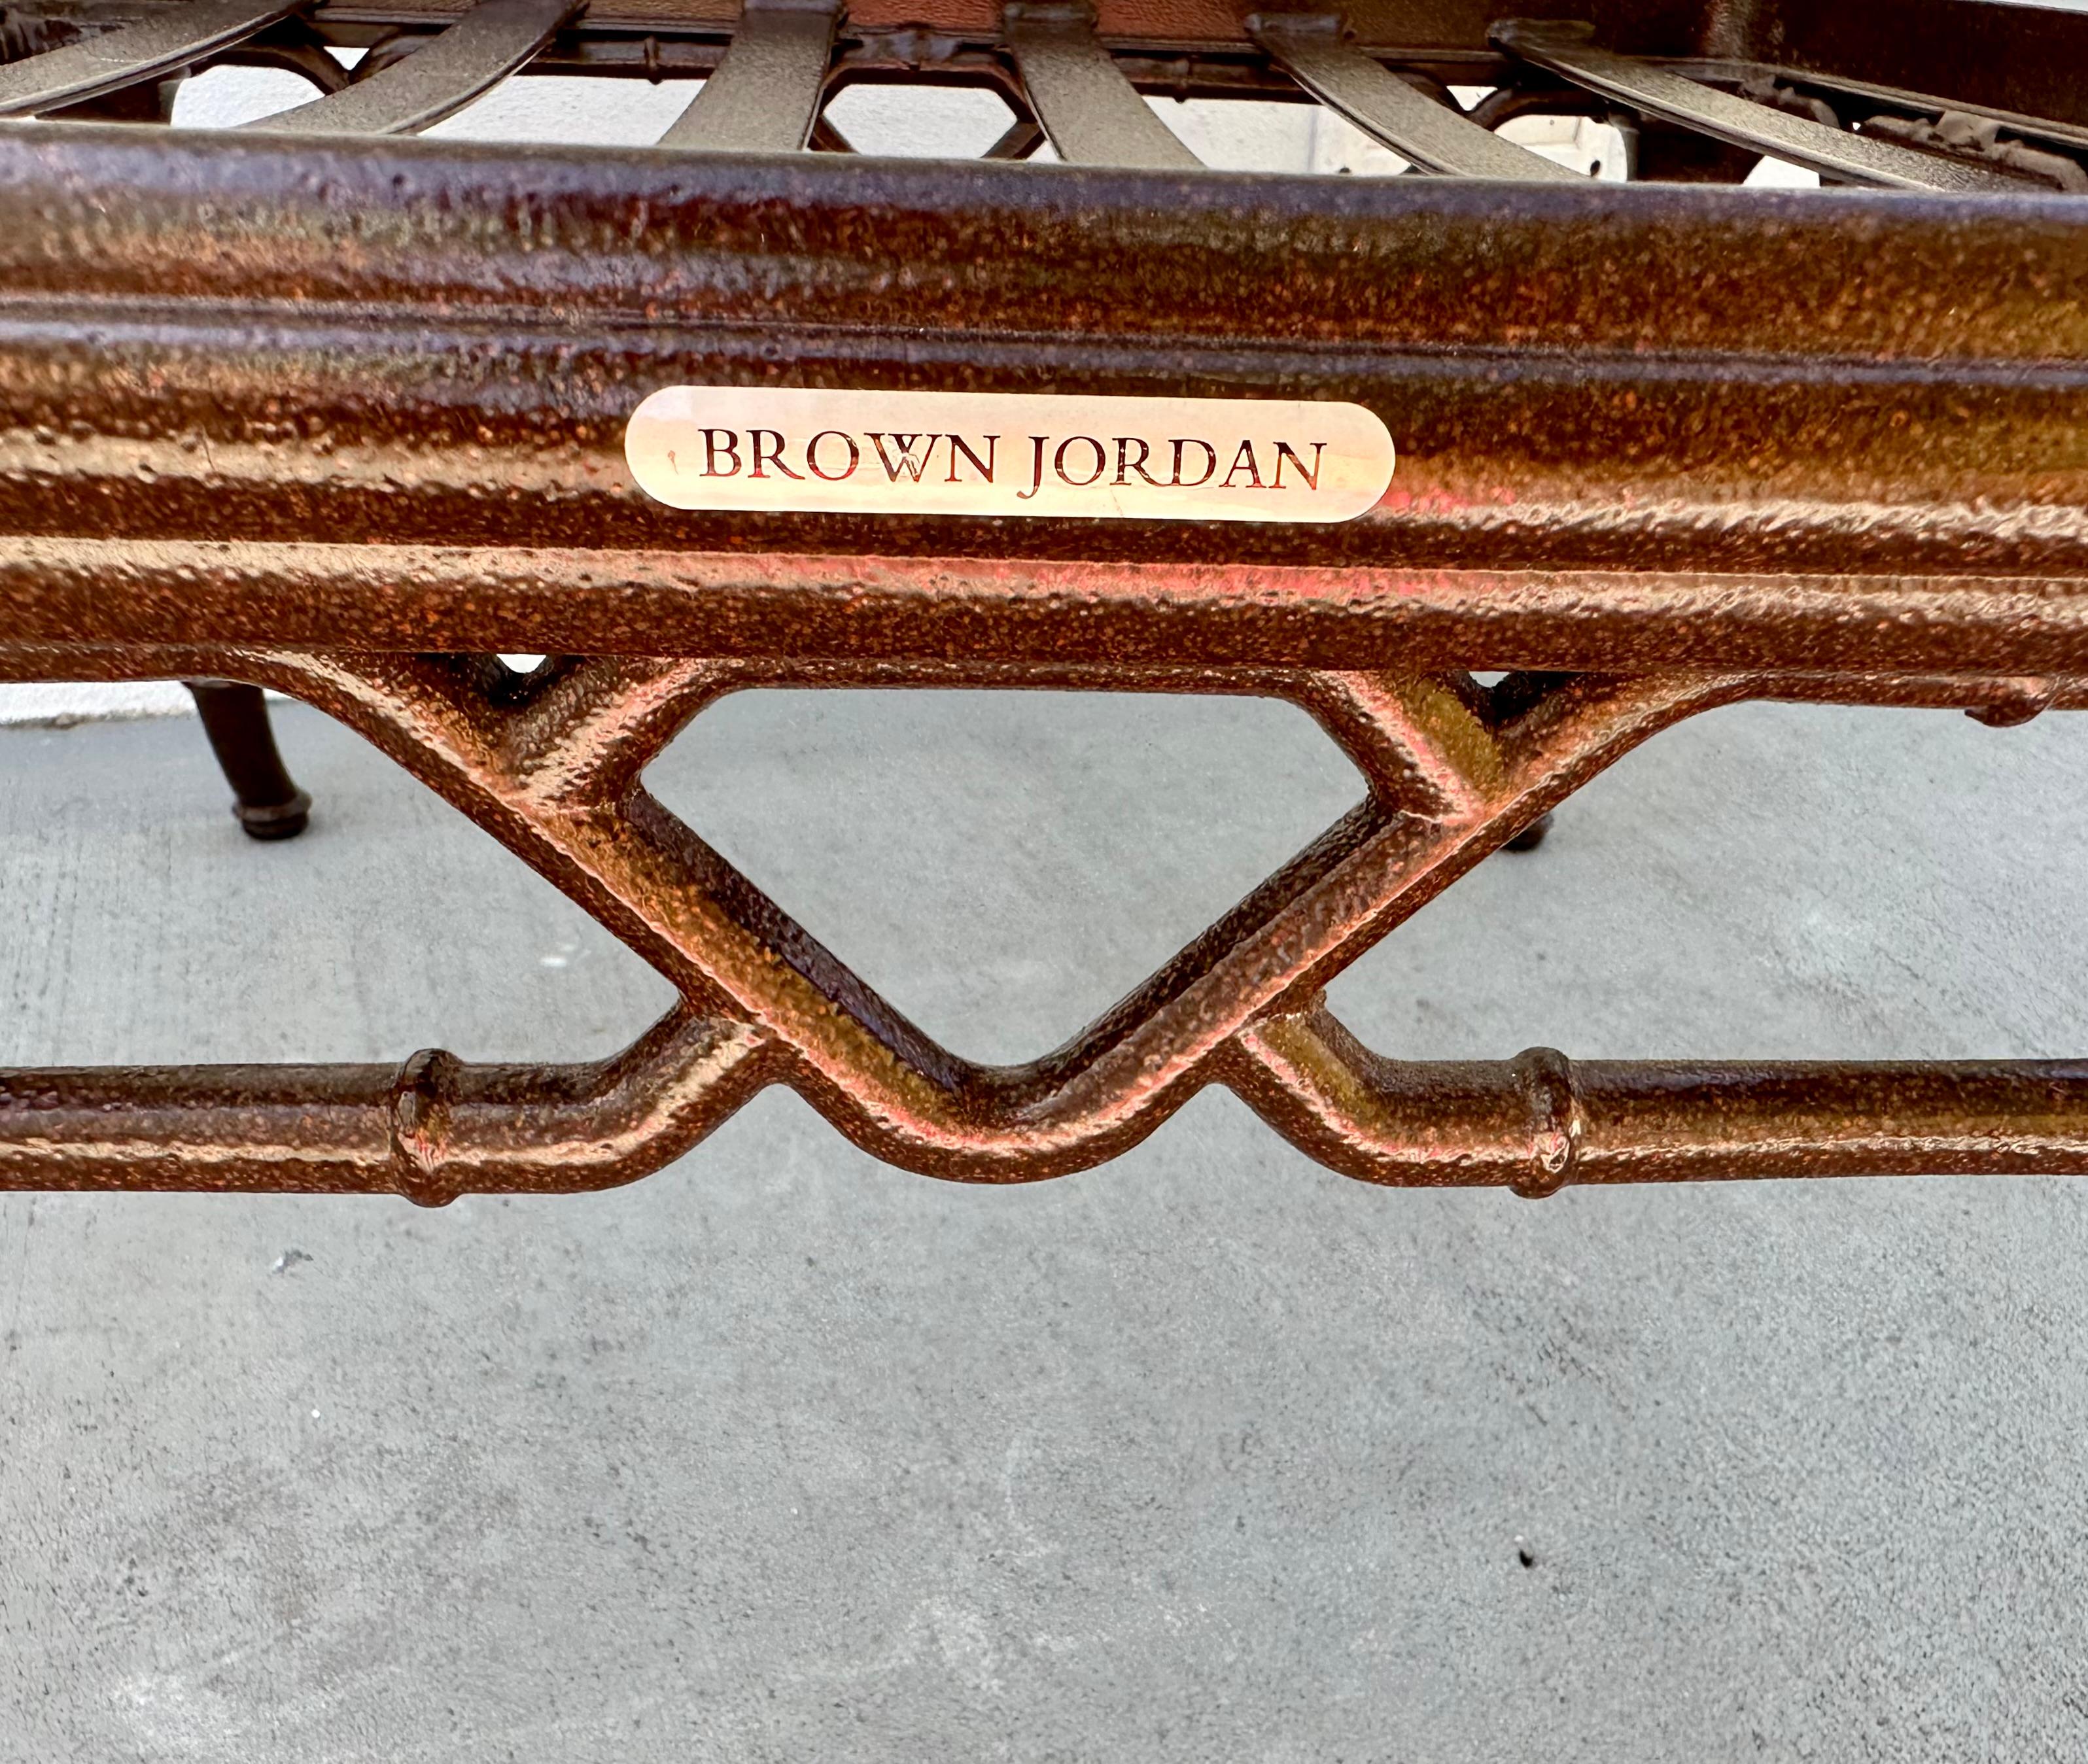 Vintage Brown Jordan Outdoor Möbel Kalkutta gepolsterte Ottomane, Chippendale inspiriert.

Brauner Jordan-Ottoman aus der Calcutta Collection. Die von Bradley Hall für Brown Jordan entworfene und 1967 eingeführte Calcutta-Kollektion wurde von